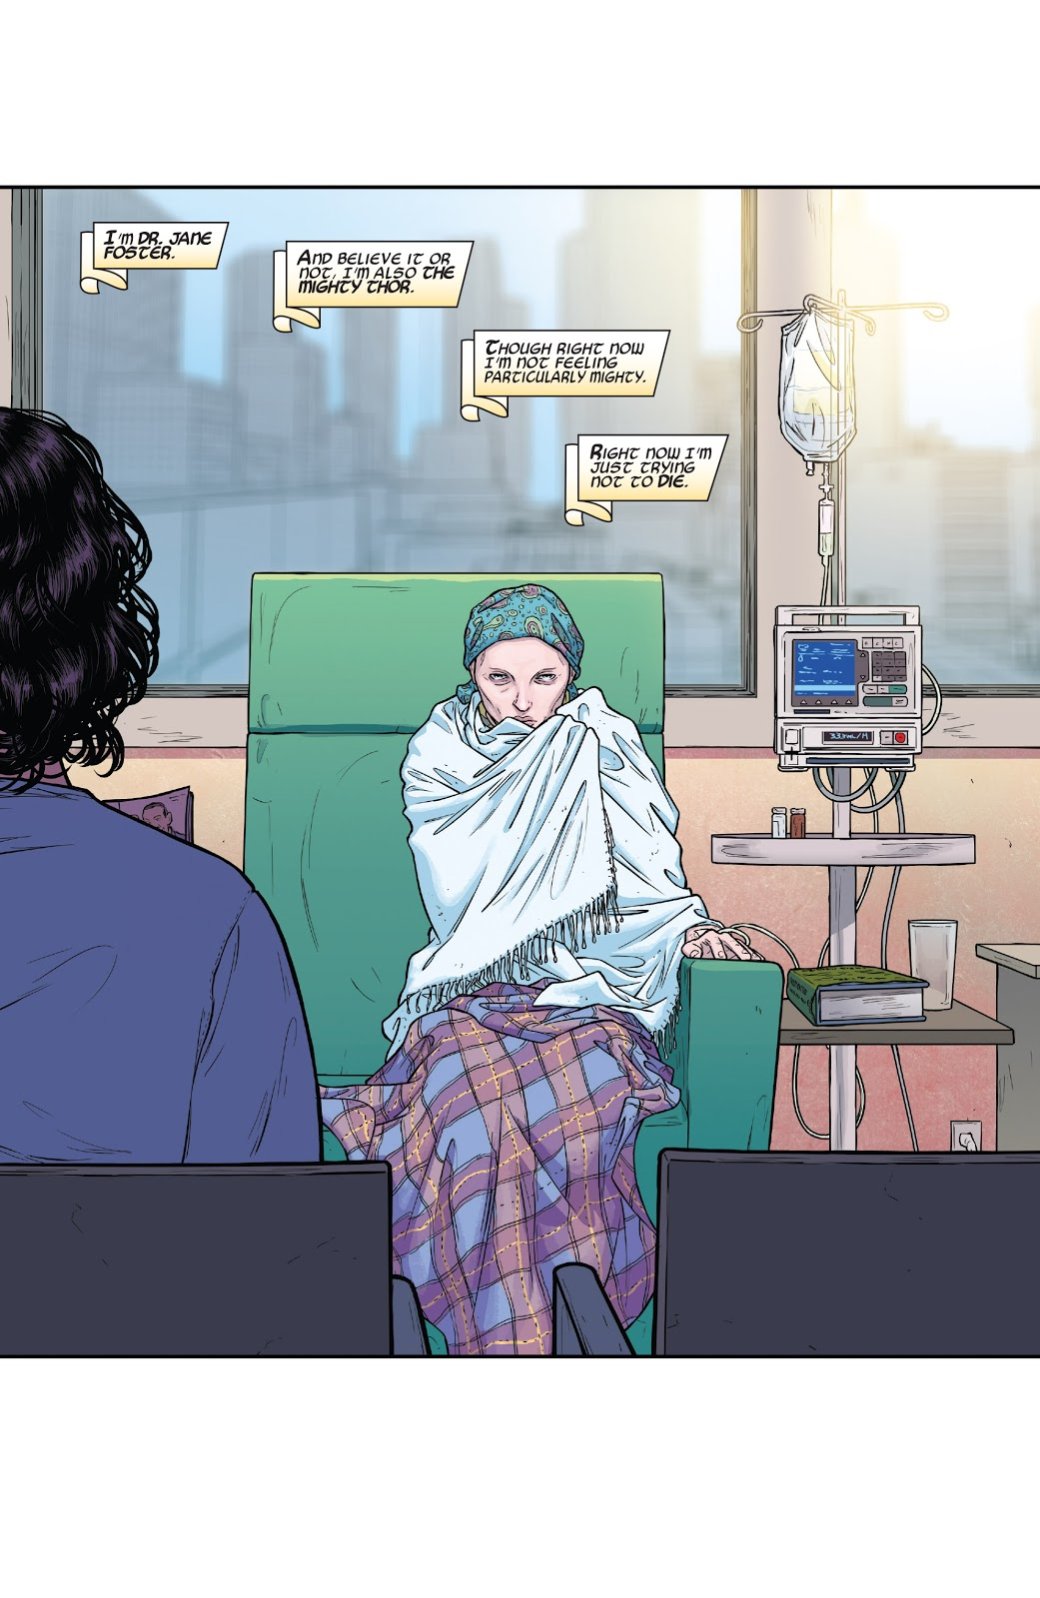 Галерея Как и почему Джейн Фостер стала новым Тором на страницах комиксов Marvel? - 4 фото